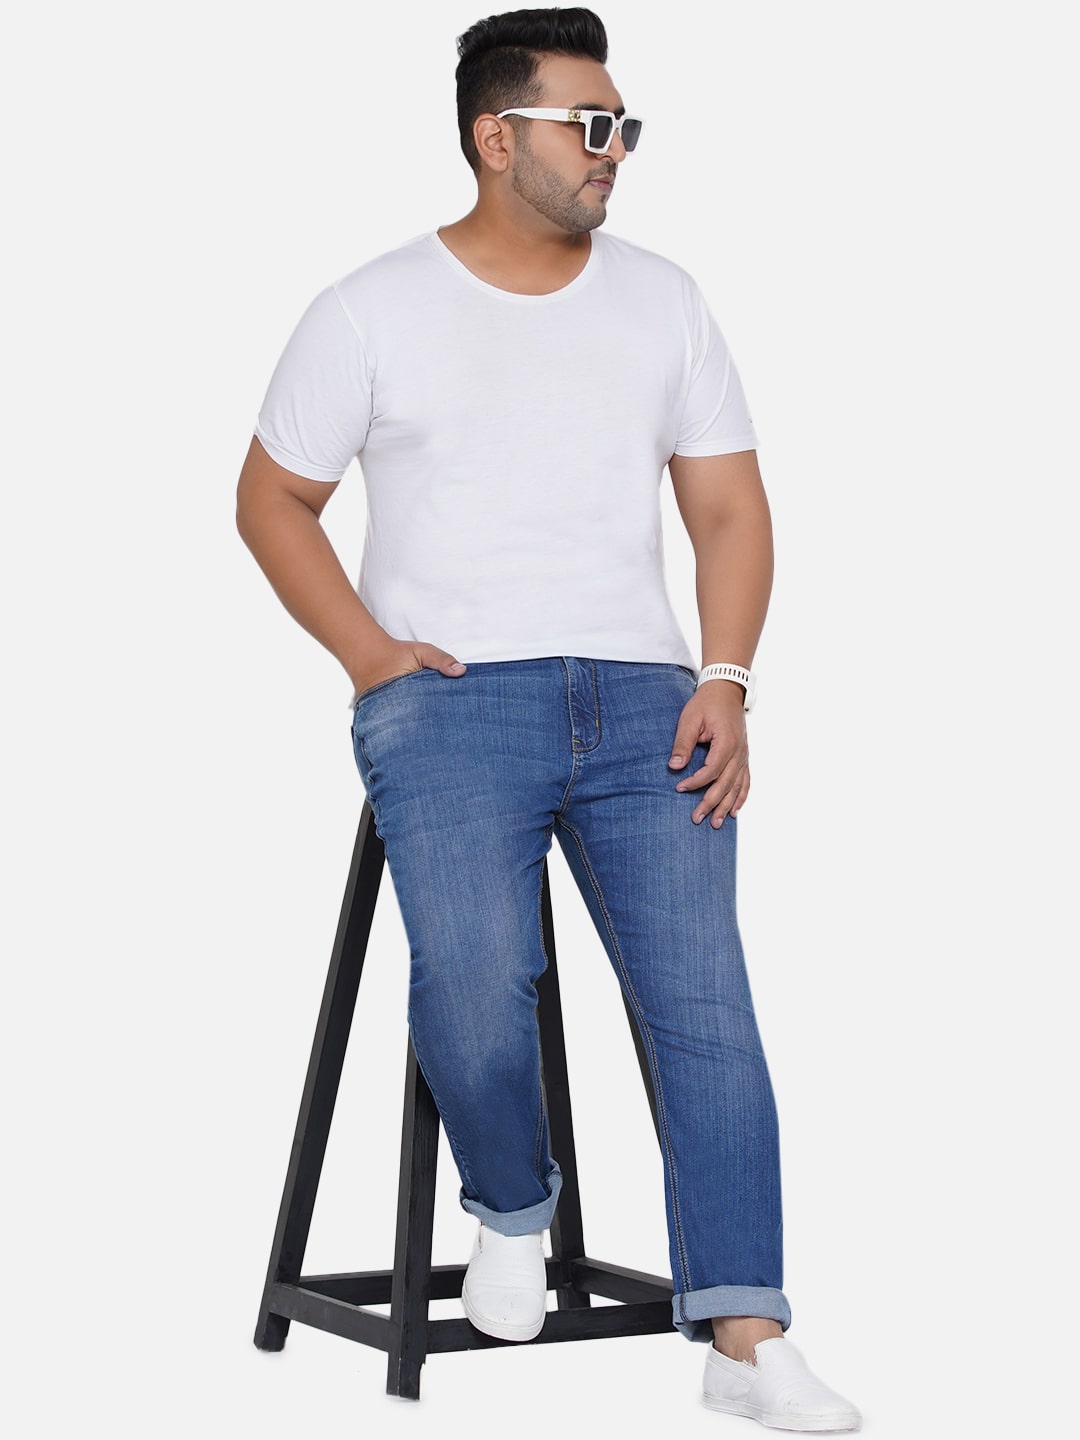 affordables/jeans/EJPJ25012/ejpj25012-1.jpg